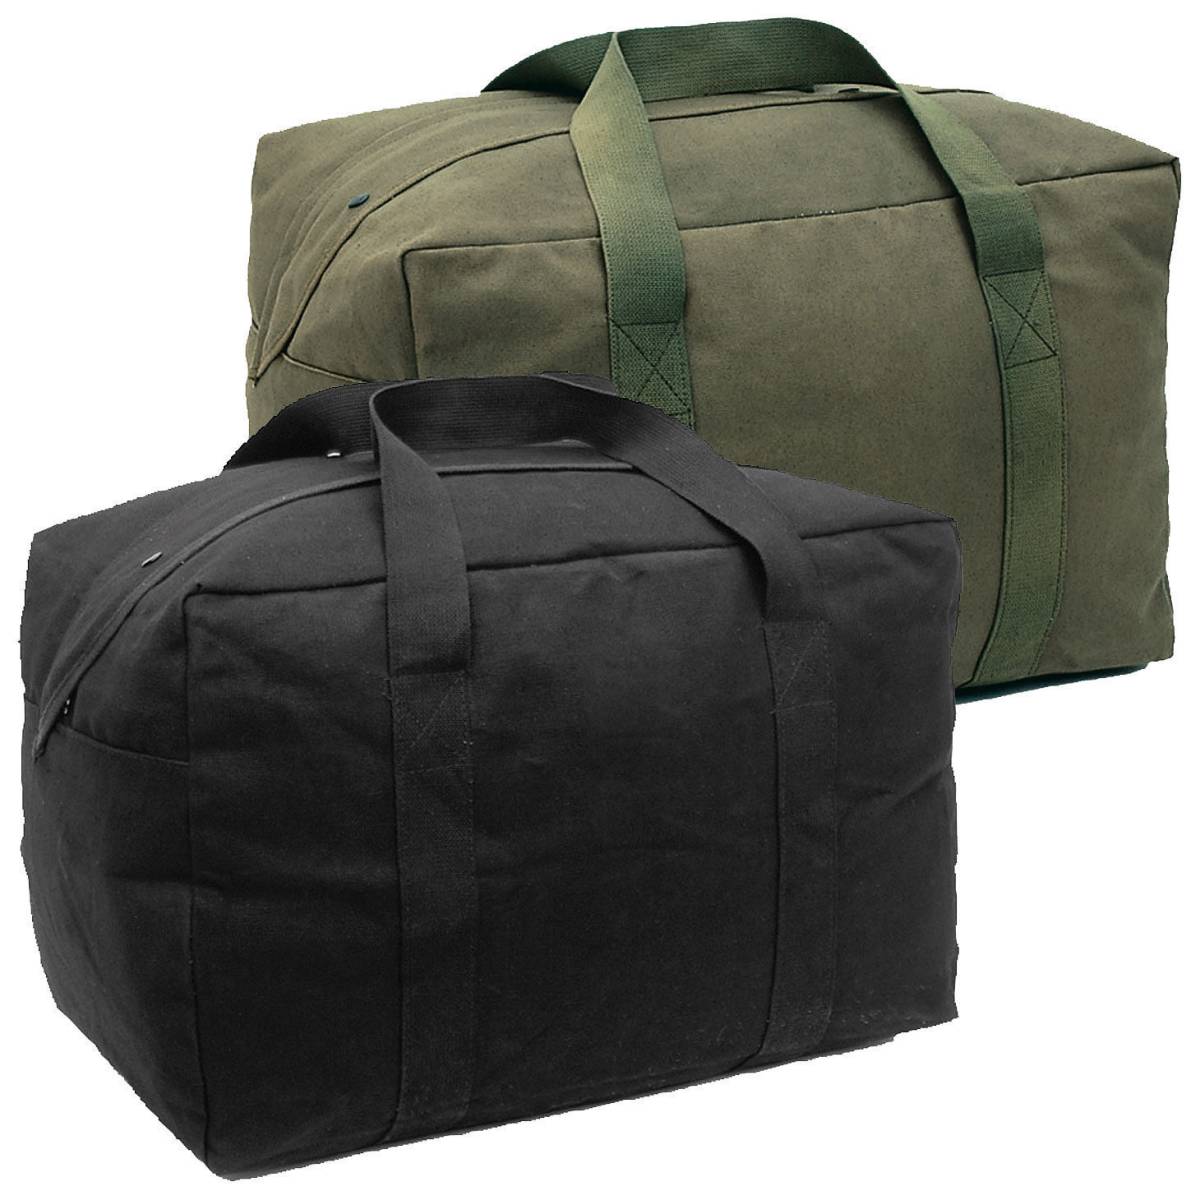 Tragetasche Mil-Tec Cargo Bag Seesack Armee Reisetasche Militär oliv